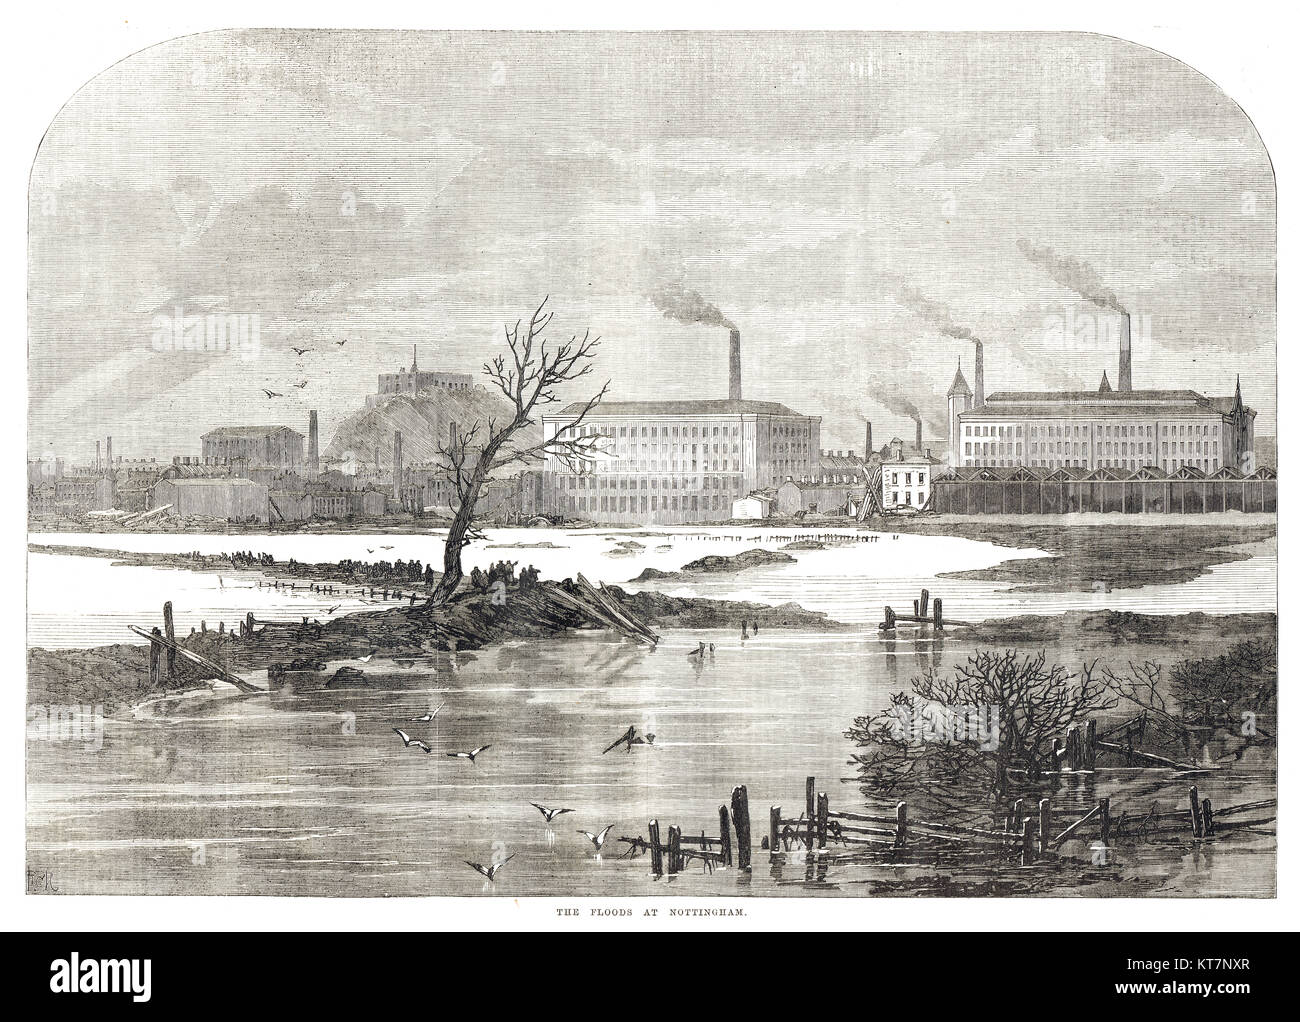 Inondations à Nottingham, Royaume-Uni, 1869 Banque D'Images